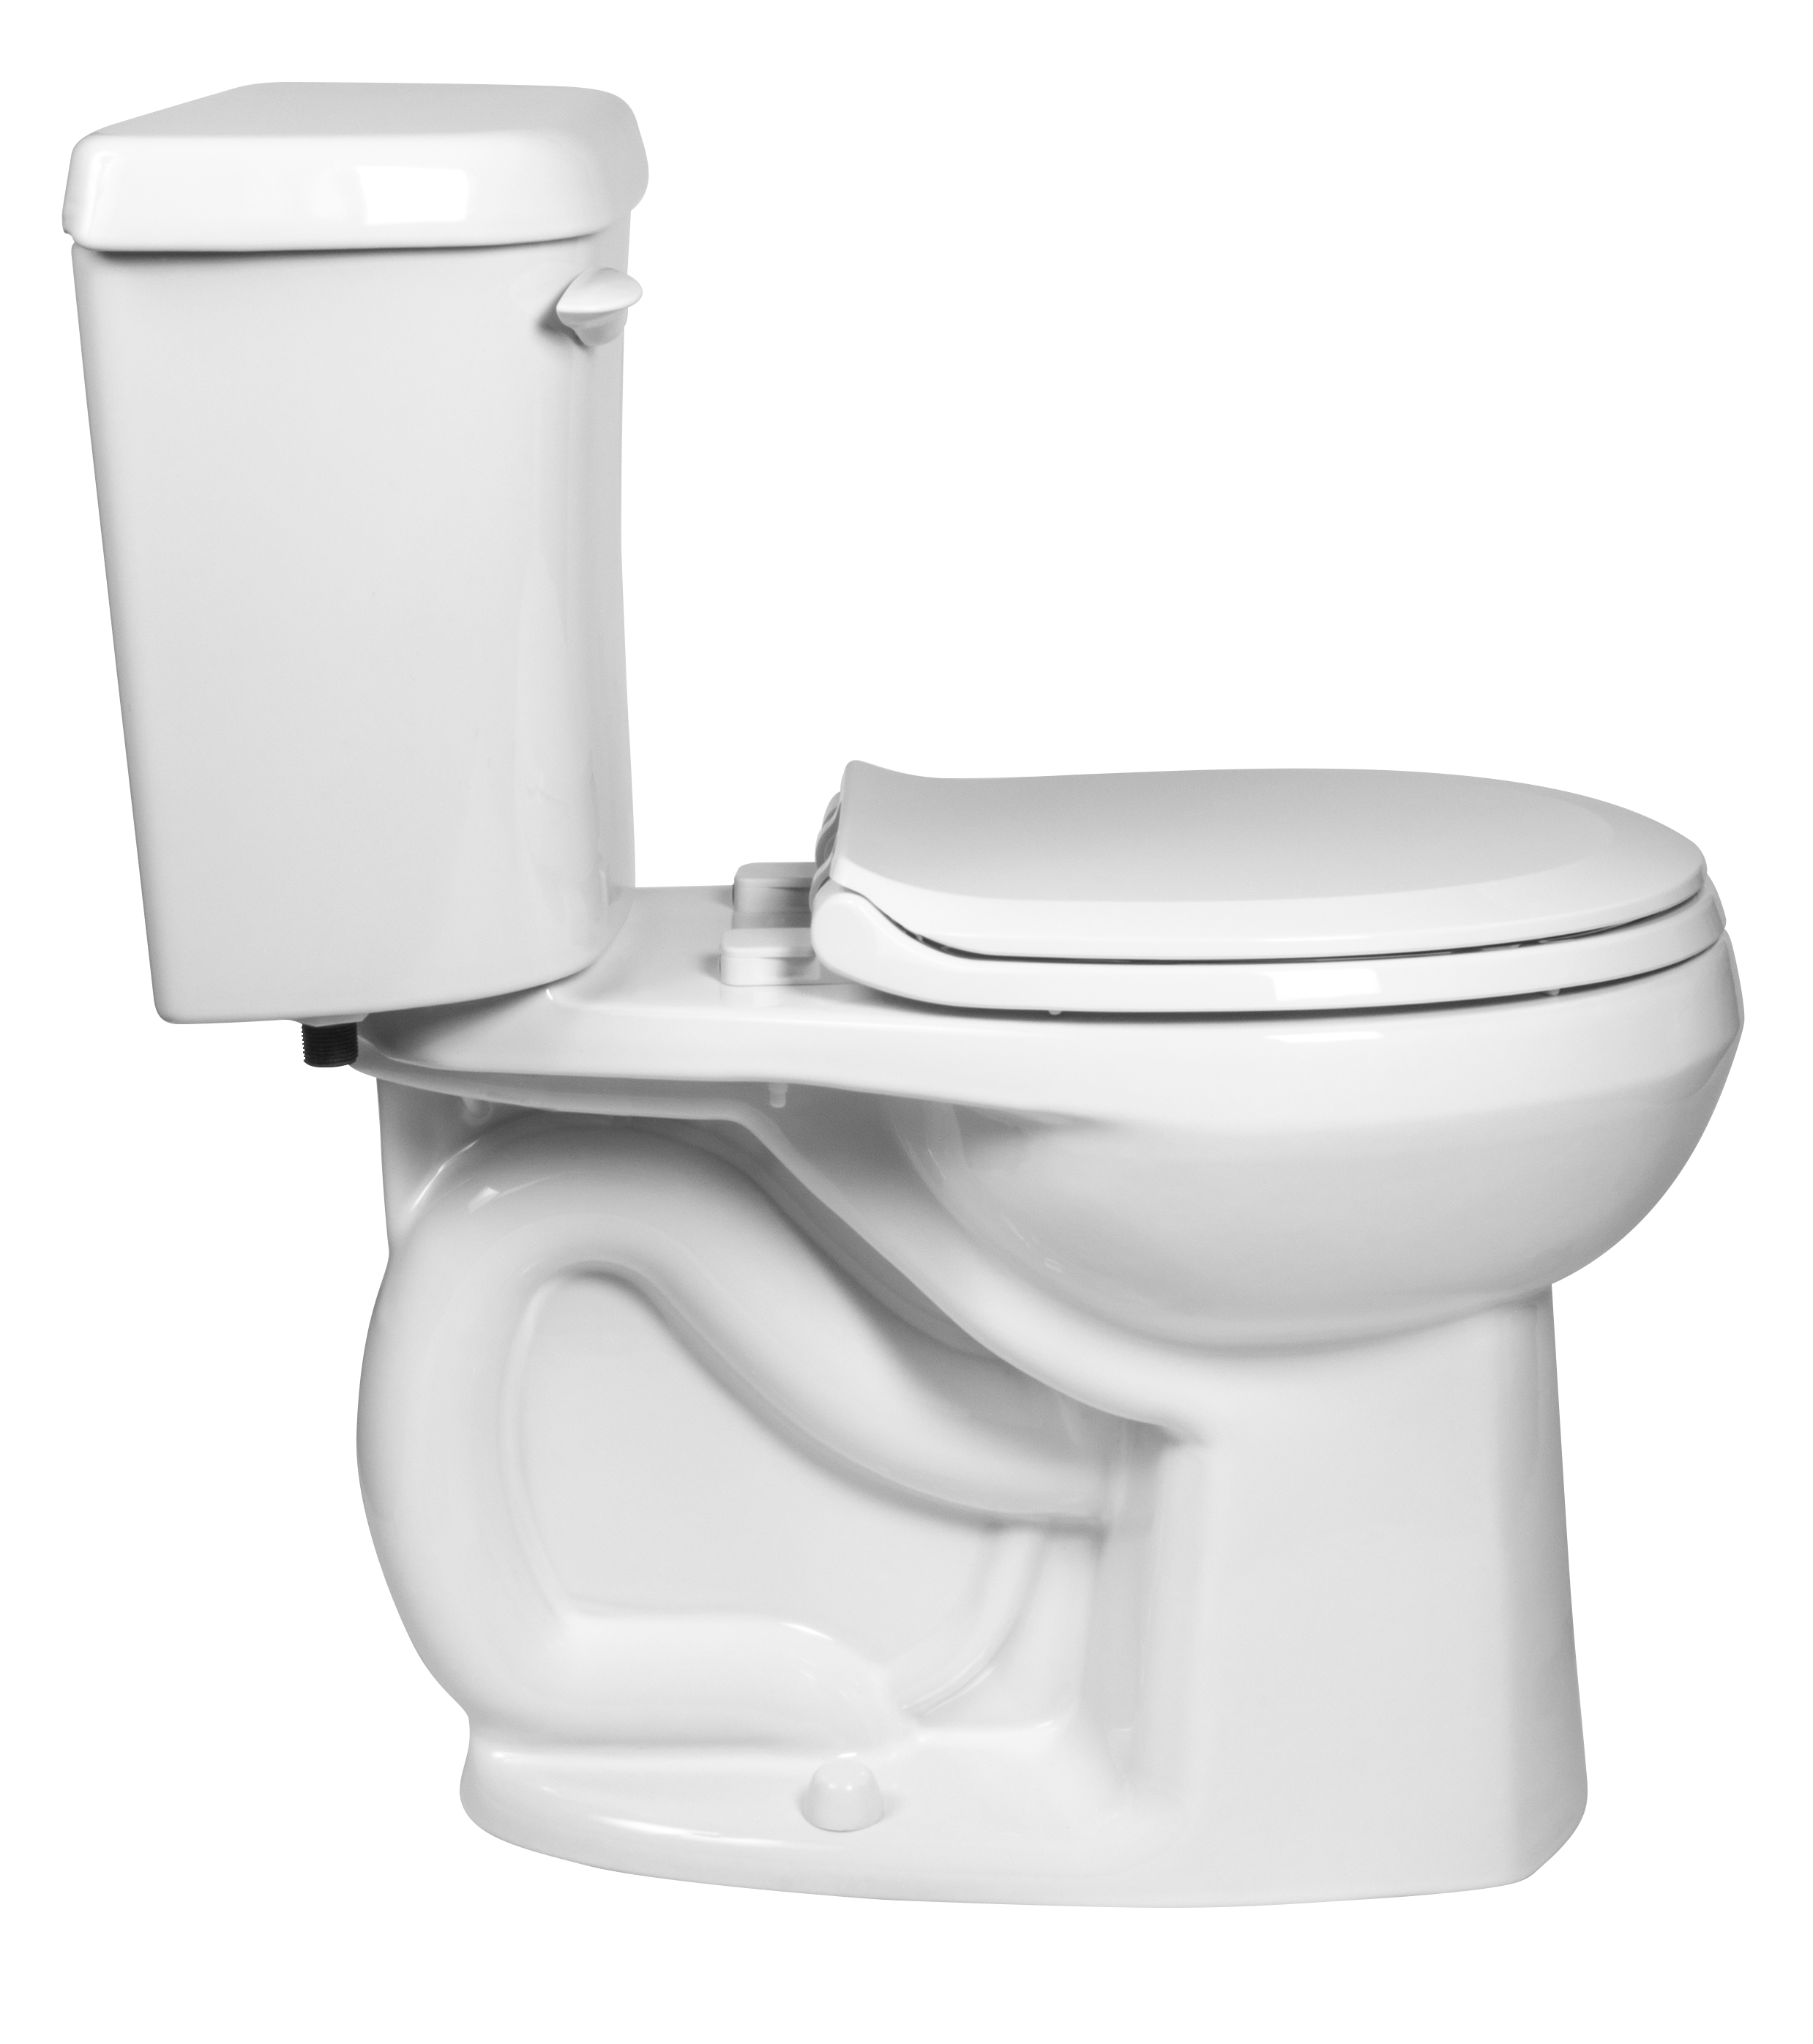 Toilette complète Marina, 2 pièces, 1,28 gpc/4,8 lpc, à cuvette au devant rond à hauteur de chaise et réservoir avec doublure, avec siège